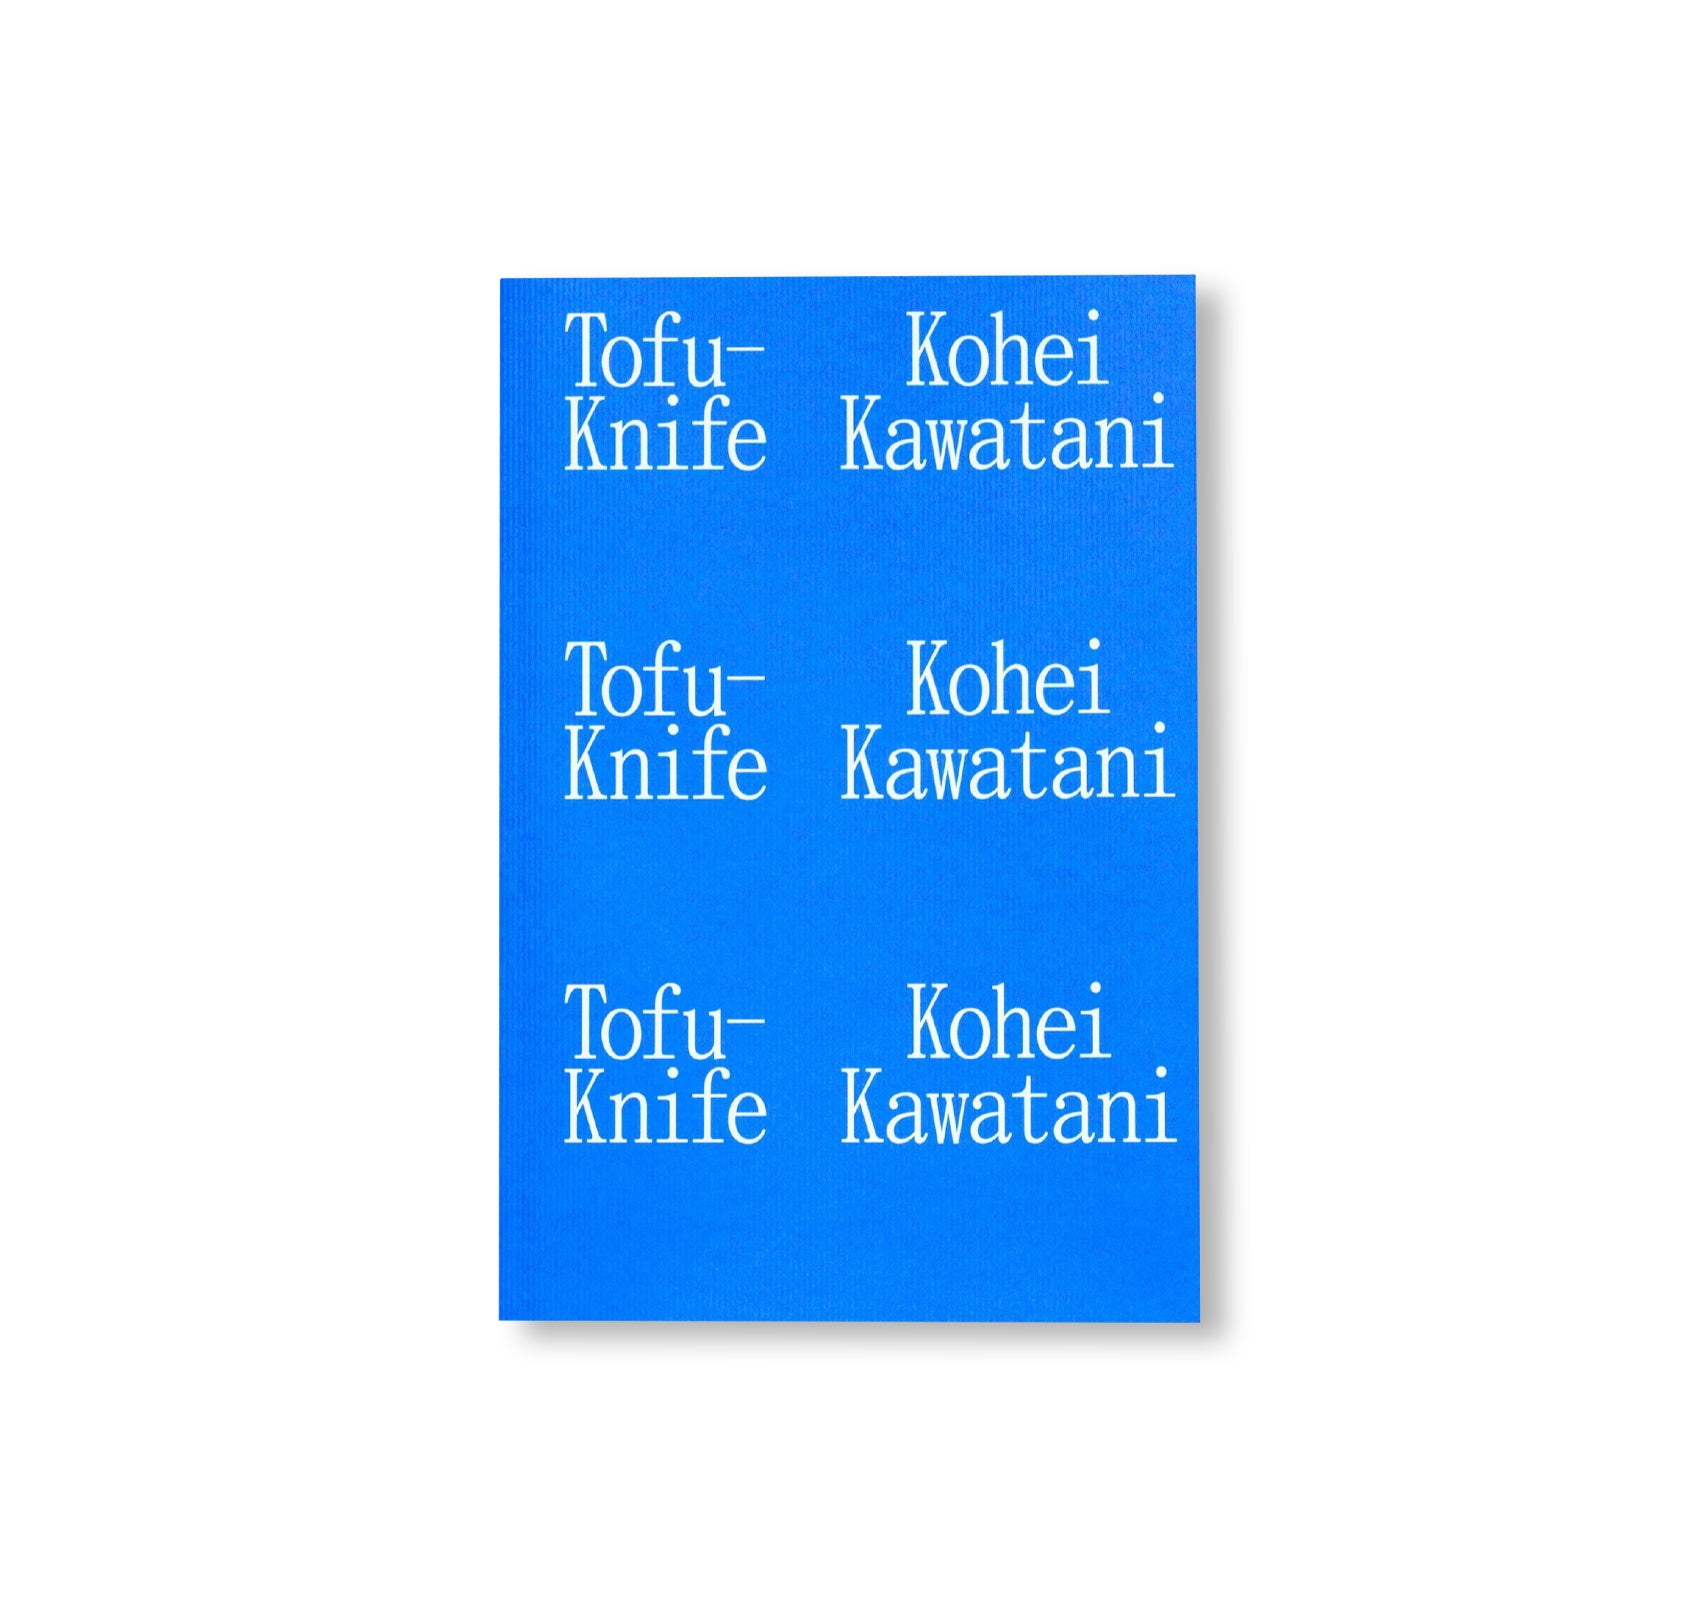 TOFU-KNIFE by Kohei Kawatani [SIGNED]